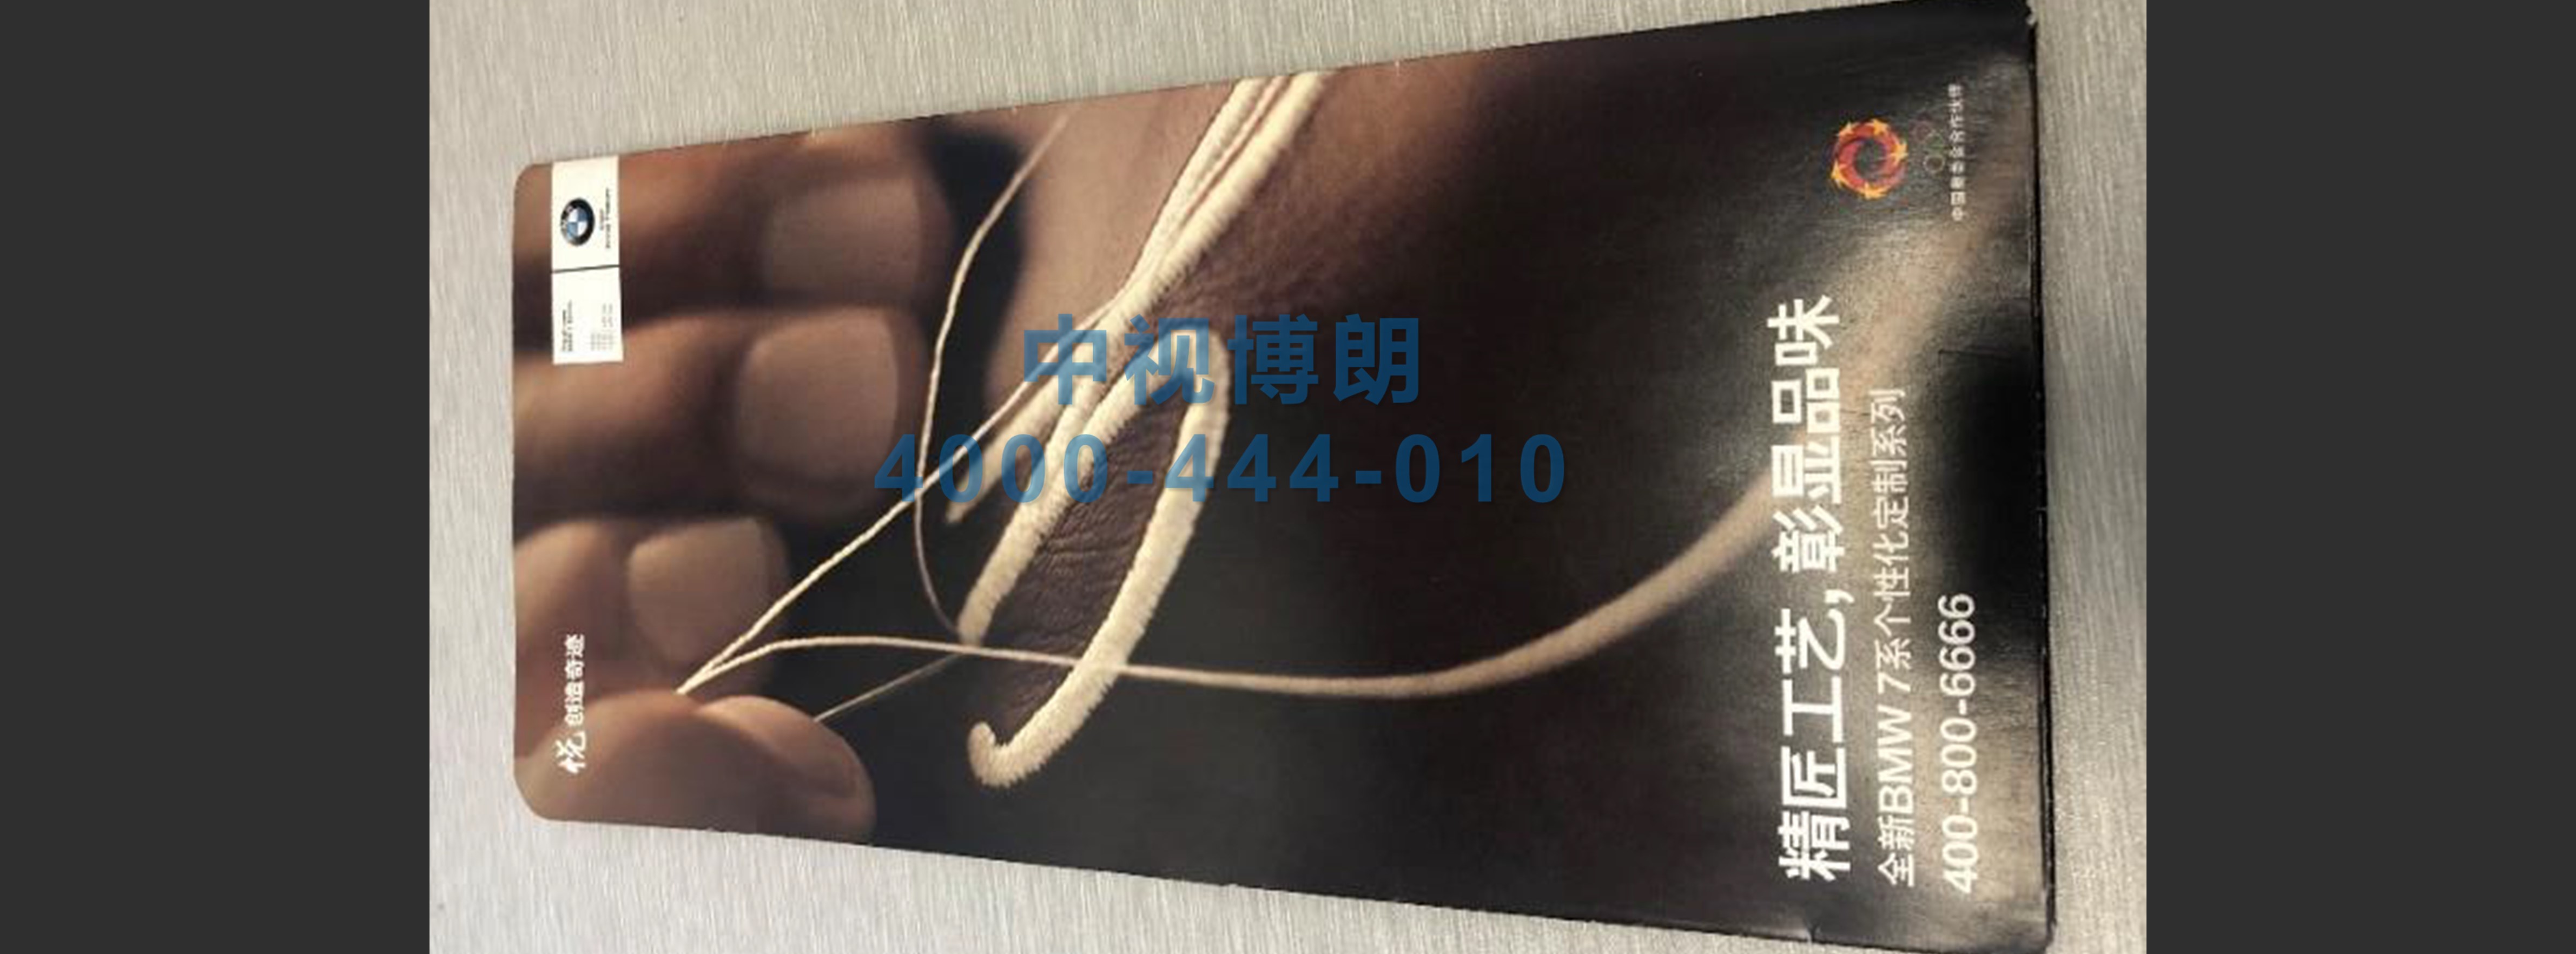 北京首都机场广告-全区域贵宾室登机牌夹